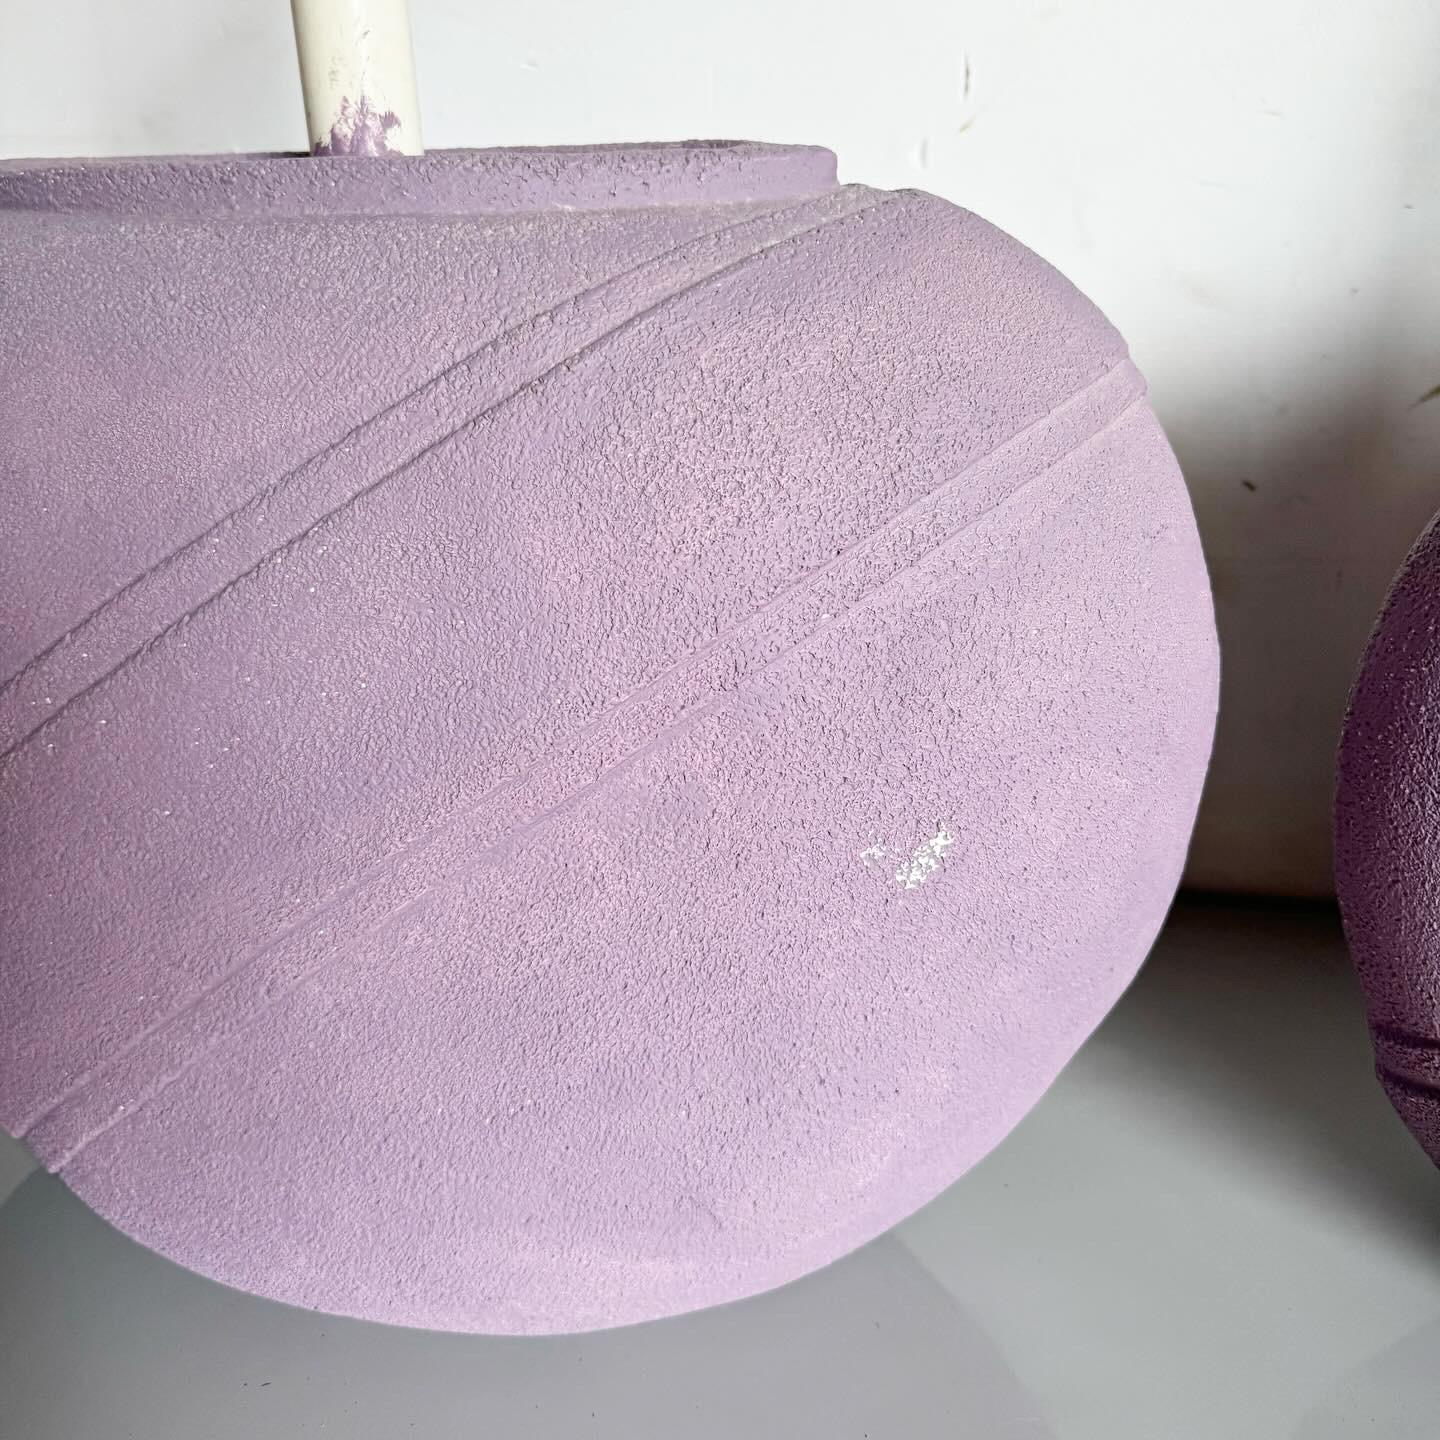 Illuminez votre espace avec une touche d'art contemporain en utilisant cette paire de lampes de table Postmodern Lavender Purple Vase. Ces lampes présentent un design unique en forme de vase dans un violet lavande vibrant, ajoutant un accent vivant